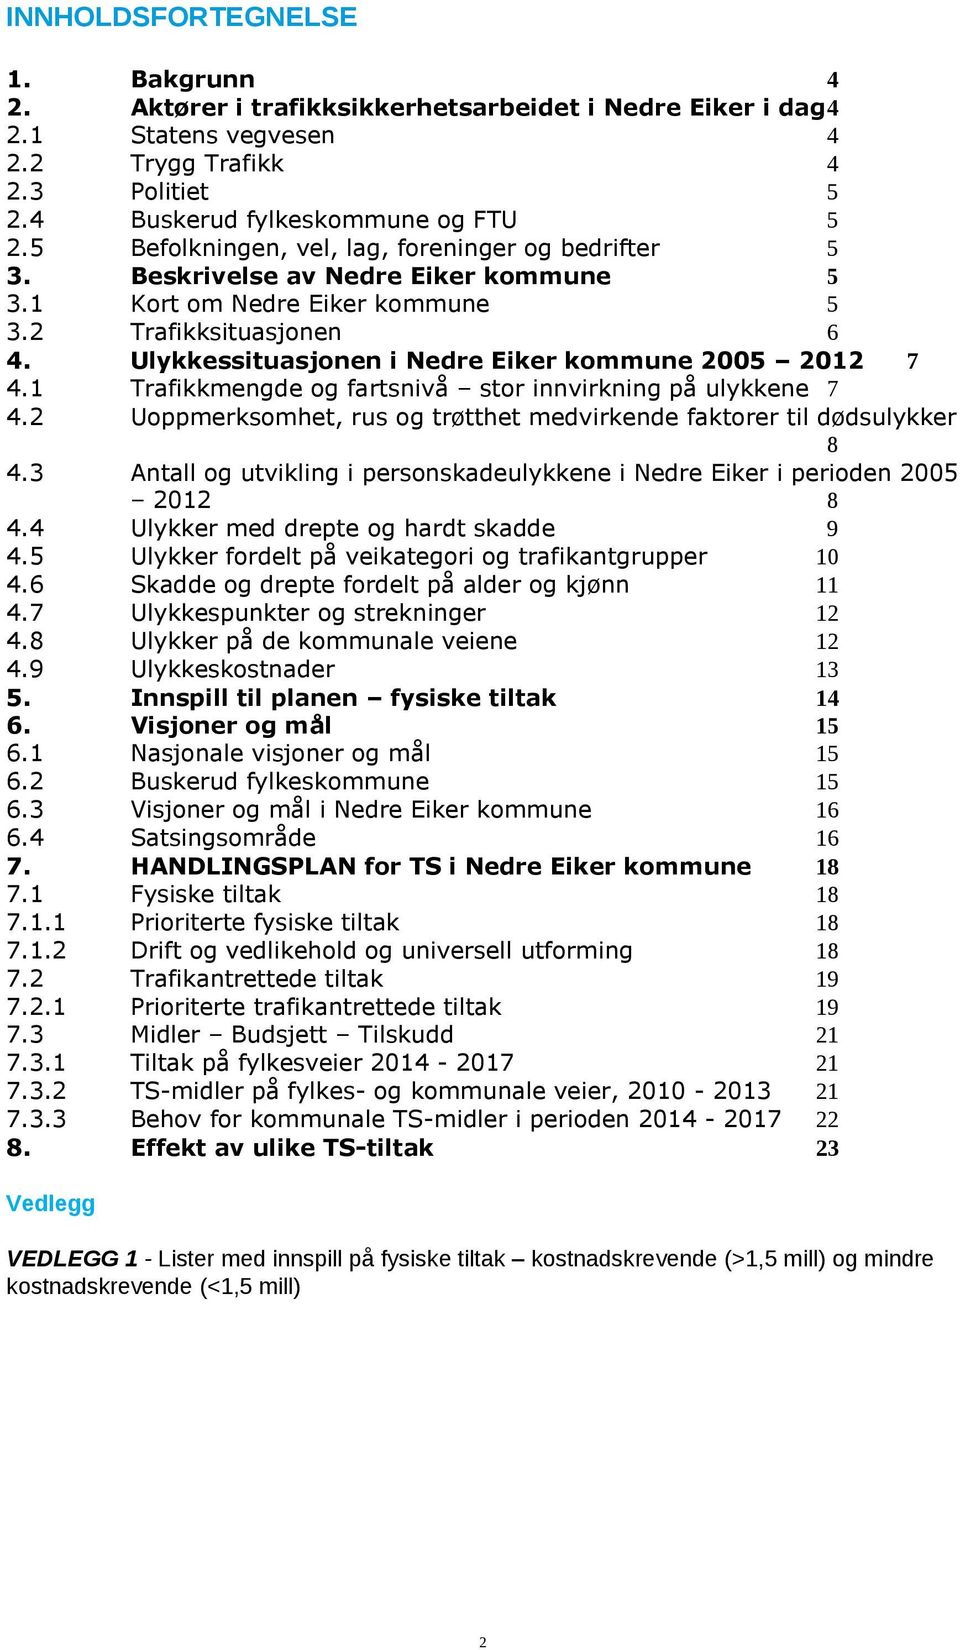 Ulykkessituasjonen i Nedre Eiker kommune 2005 2012 7 4.1 Trafikkmengde og fartsnivå stor innvirkning på ulykkene 7 4.2 Uoppmerksomhet, rus og trøtthet medvirkende faktorer til dødsulykker 8 4.